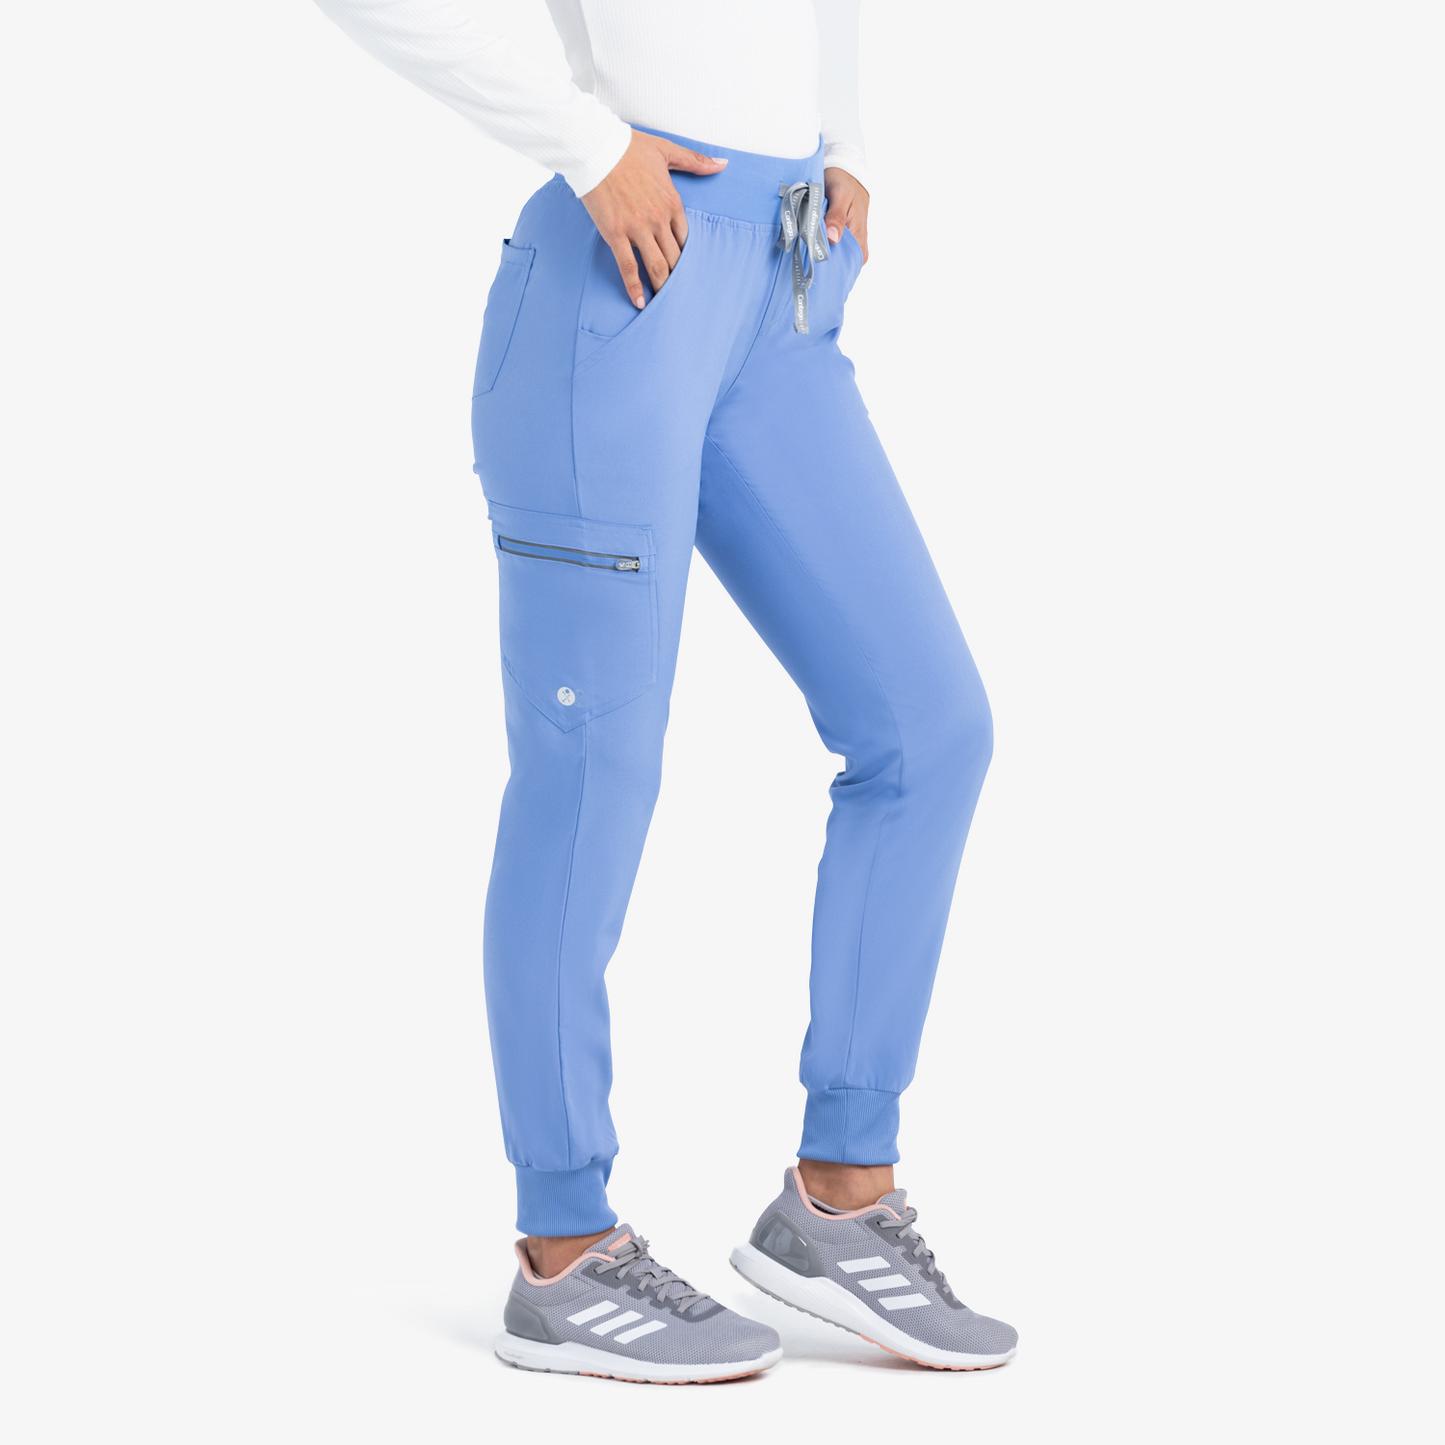 Women’s Active Jogger Pants